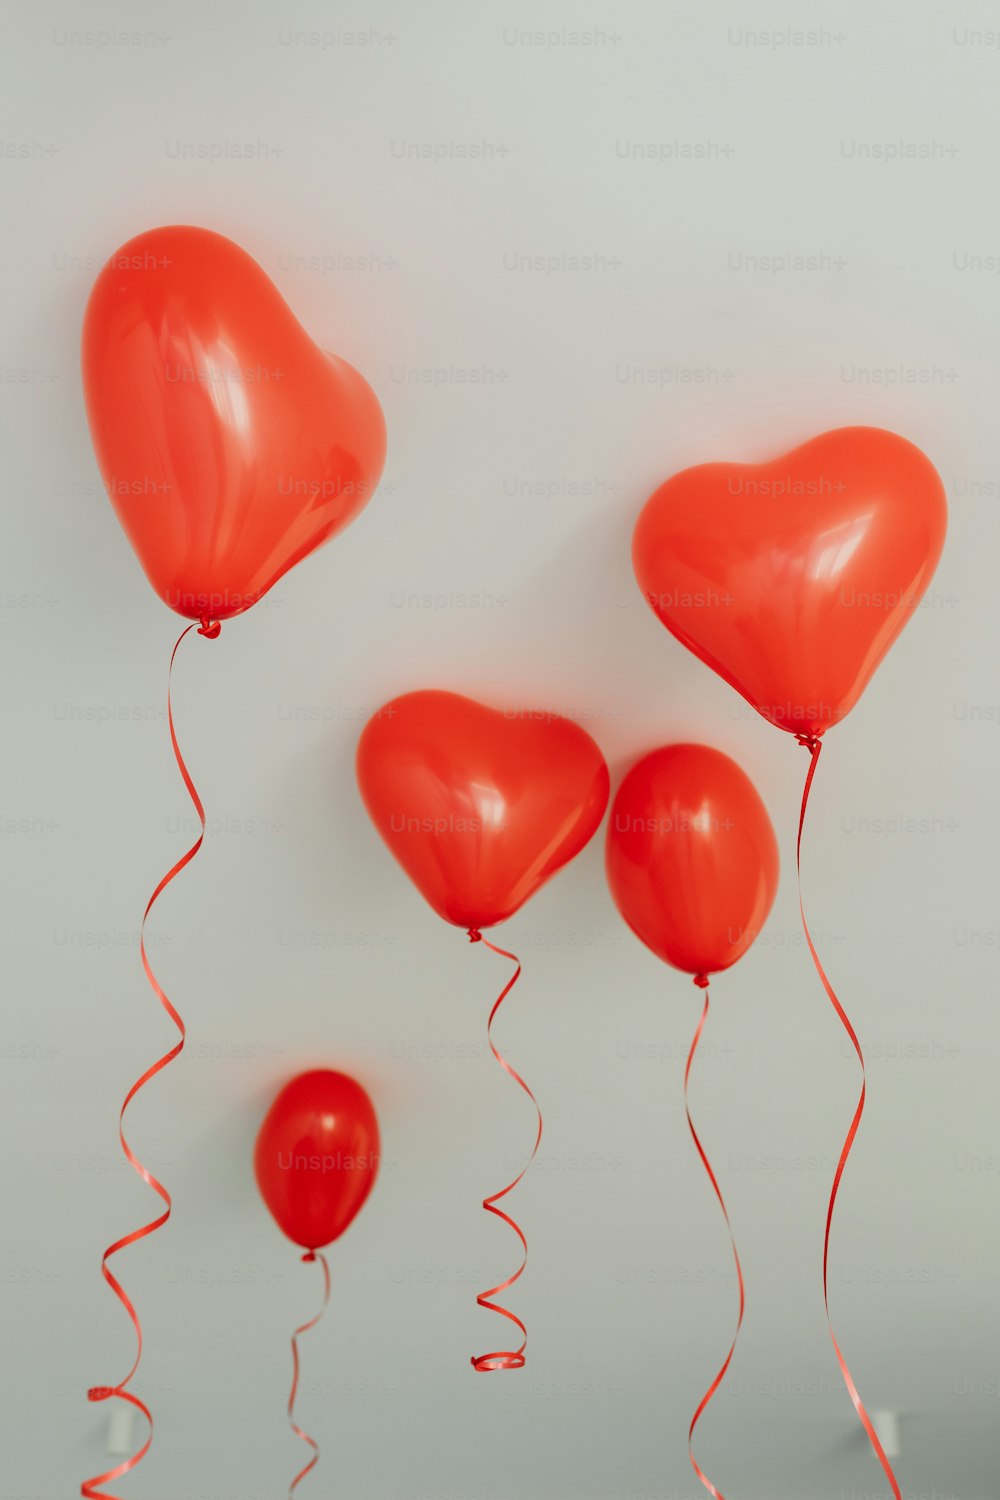 Un grupo de globos rojos flotando en el aire